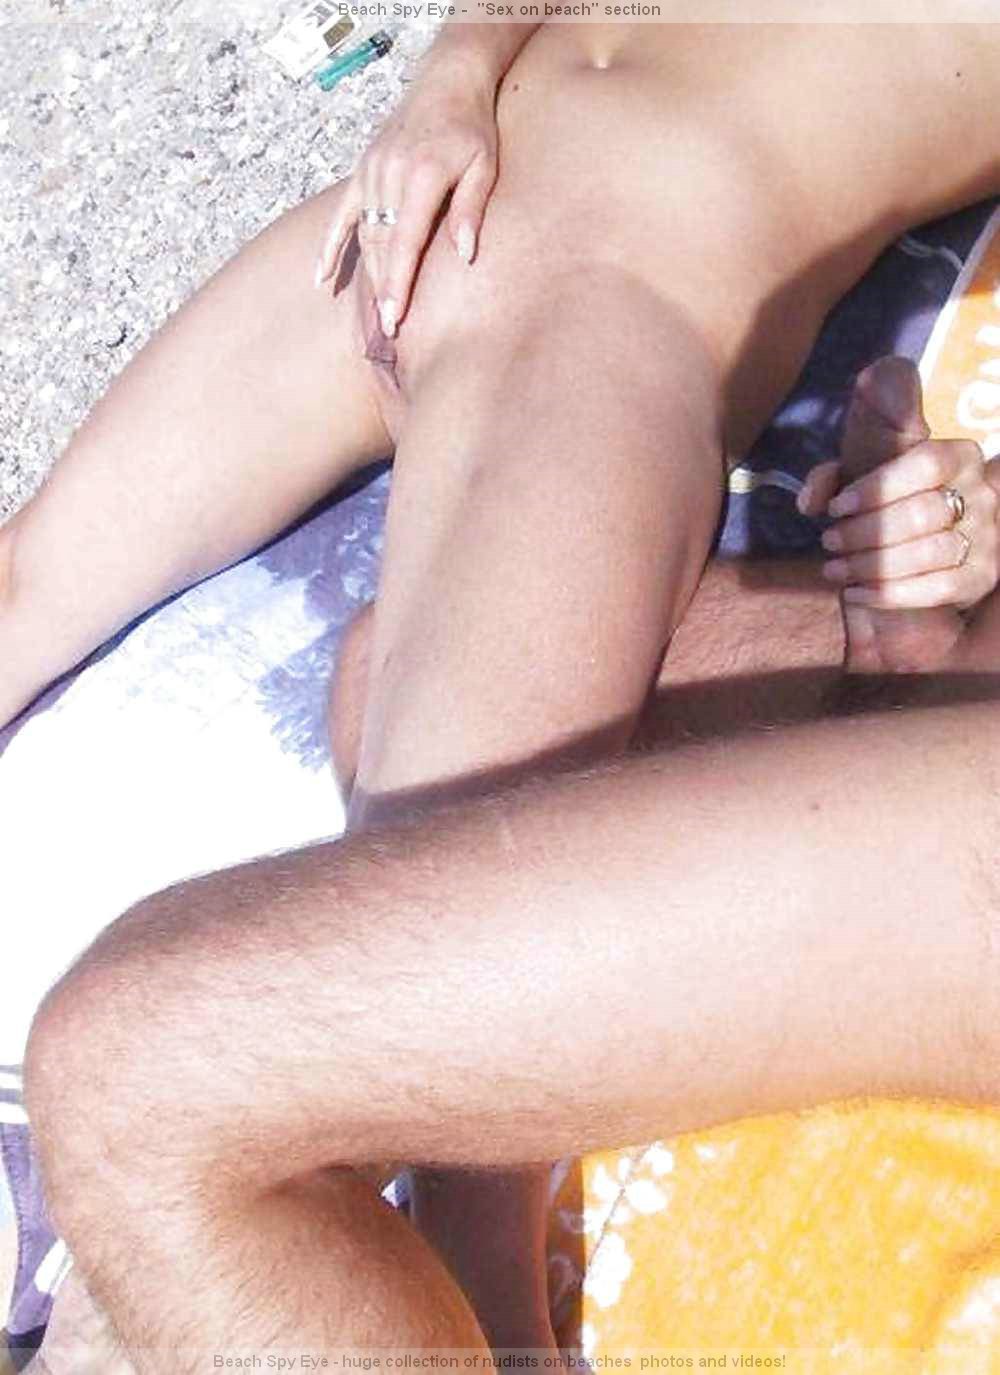 https://pbs.bulkjerk.com/39/3926/pictures/4014-1-voyeur-beach-sex.jpg